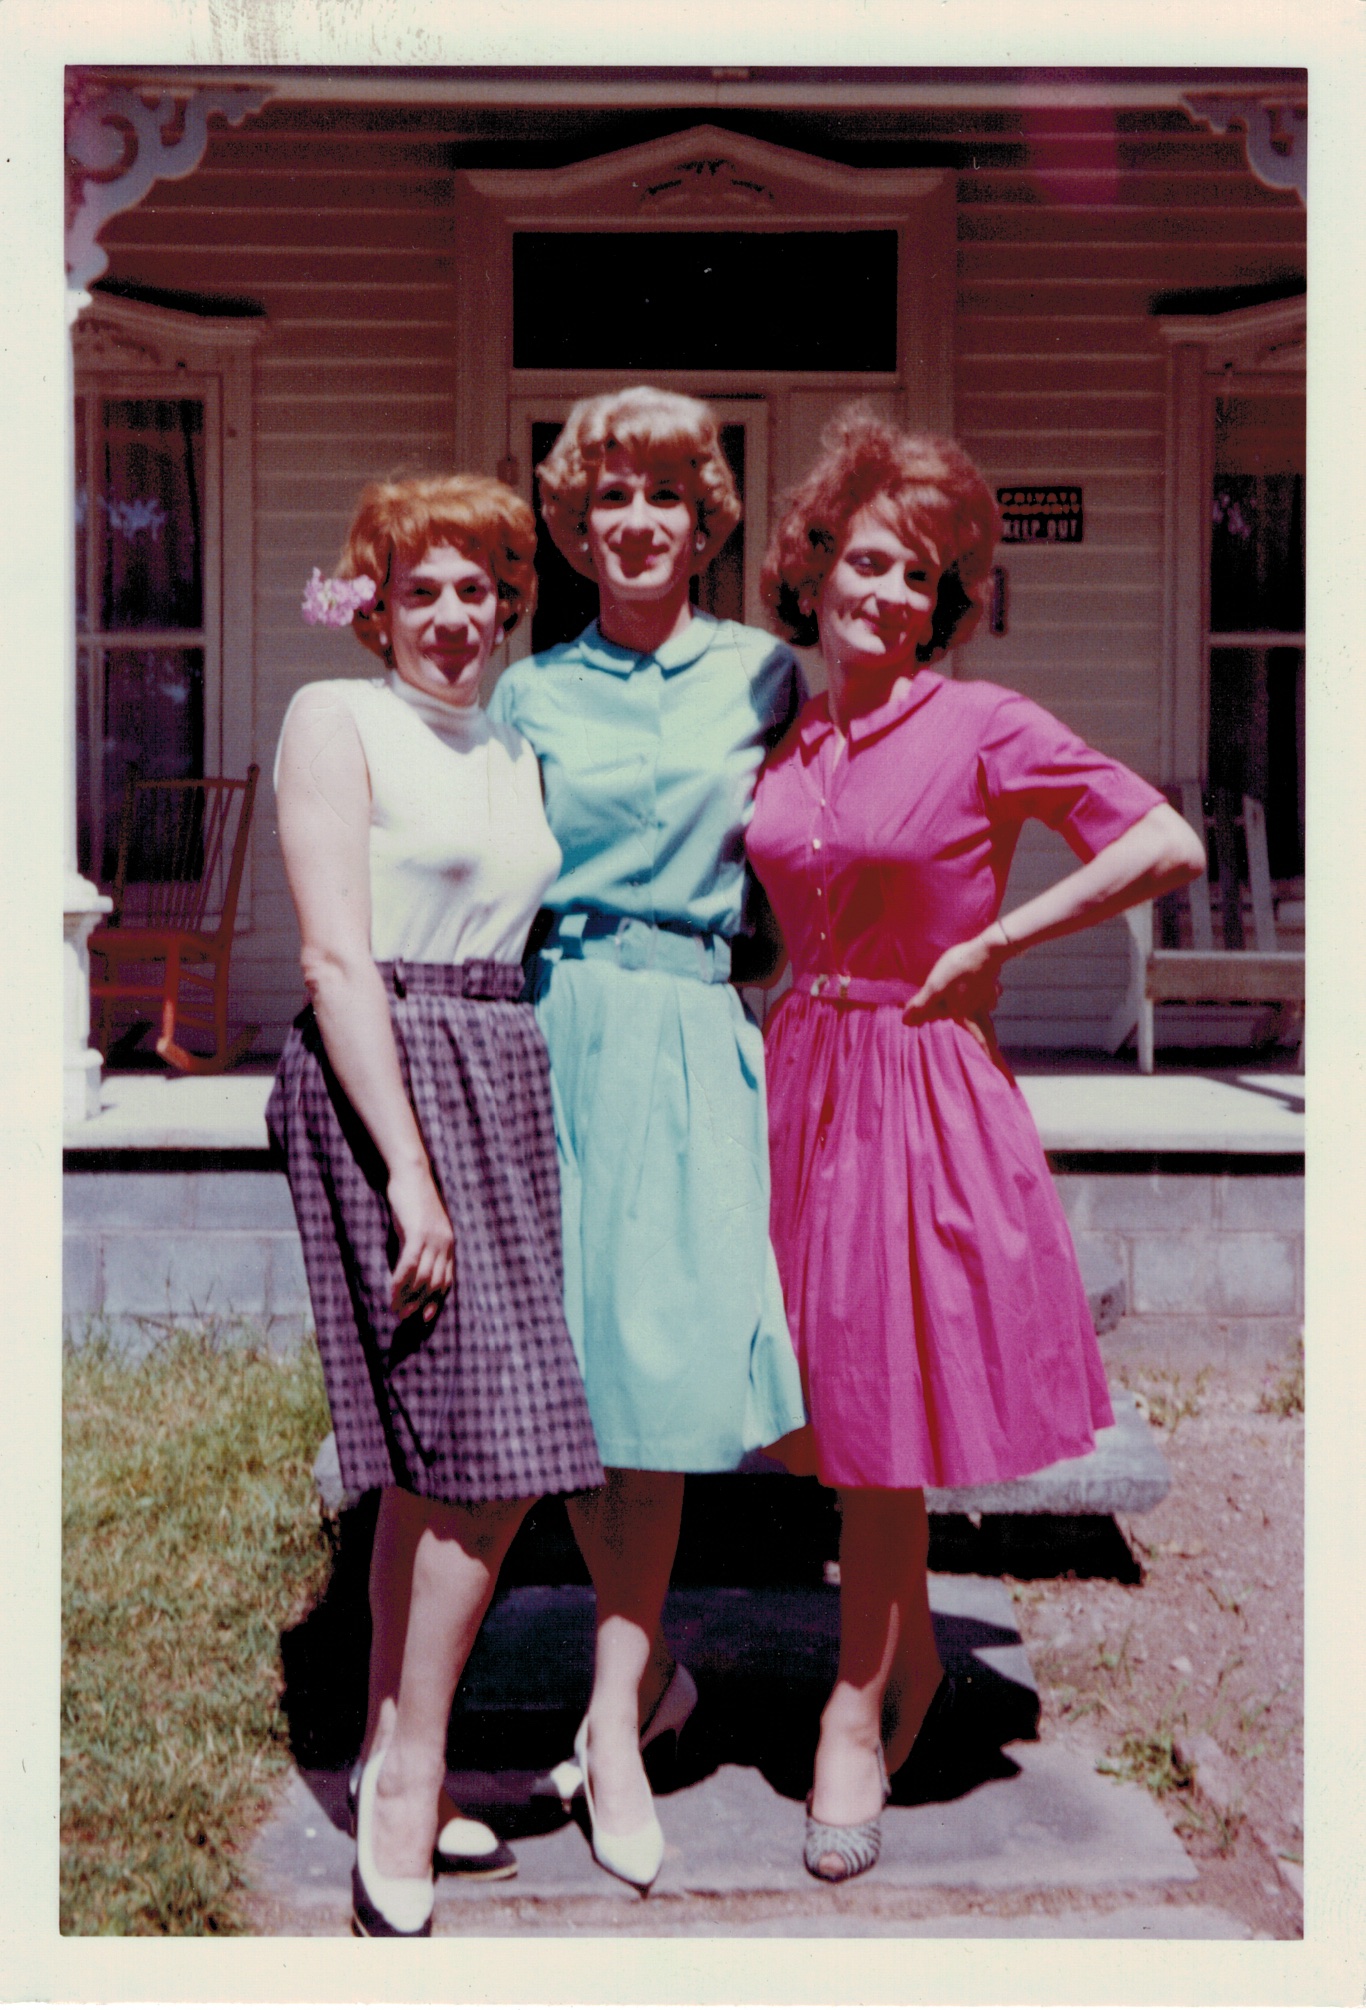 Drie vrouwen gekleed in jaren '50-'60 jurken poseren innig gearmd met elkaar. Het zijn mannen die met veel plezier in travestie lopen en elkaar daarbij steunen.